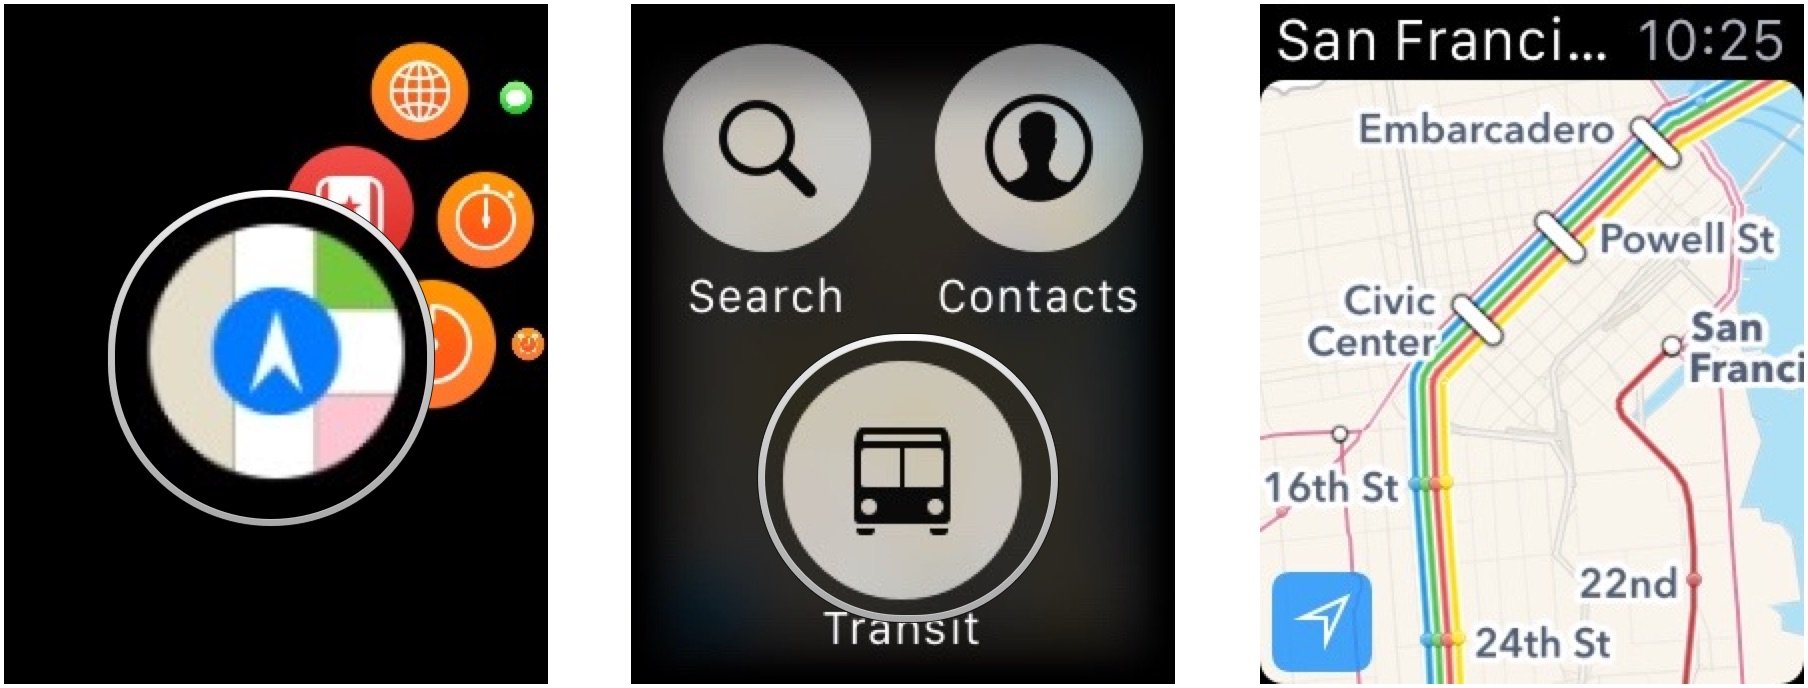 Обзор общественного транспорта в Apple Maps